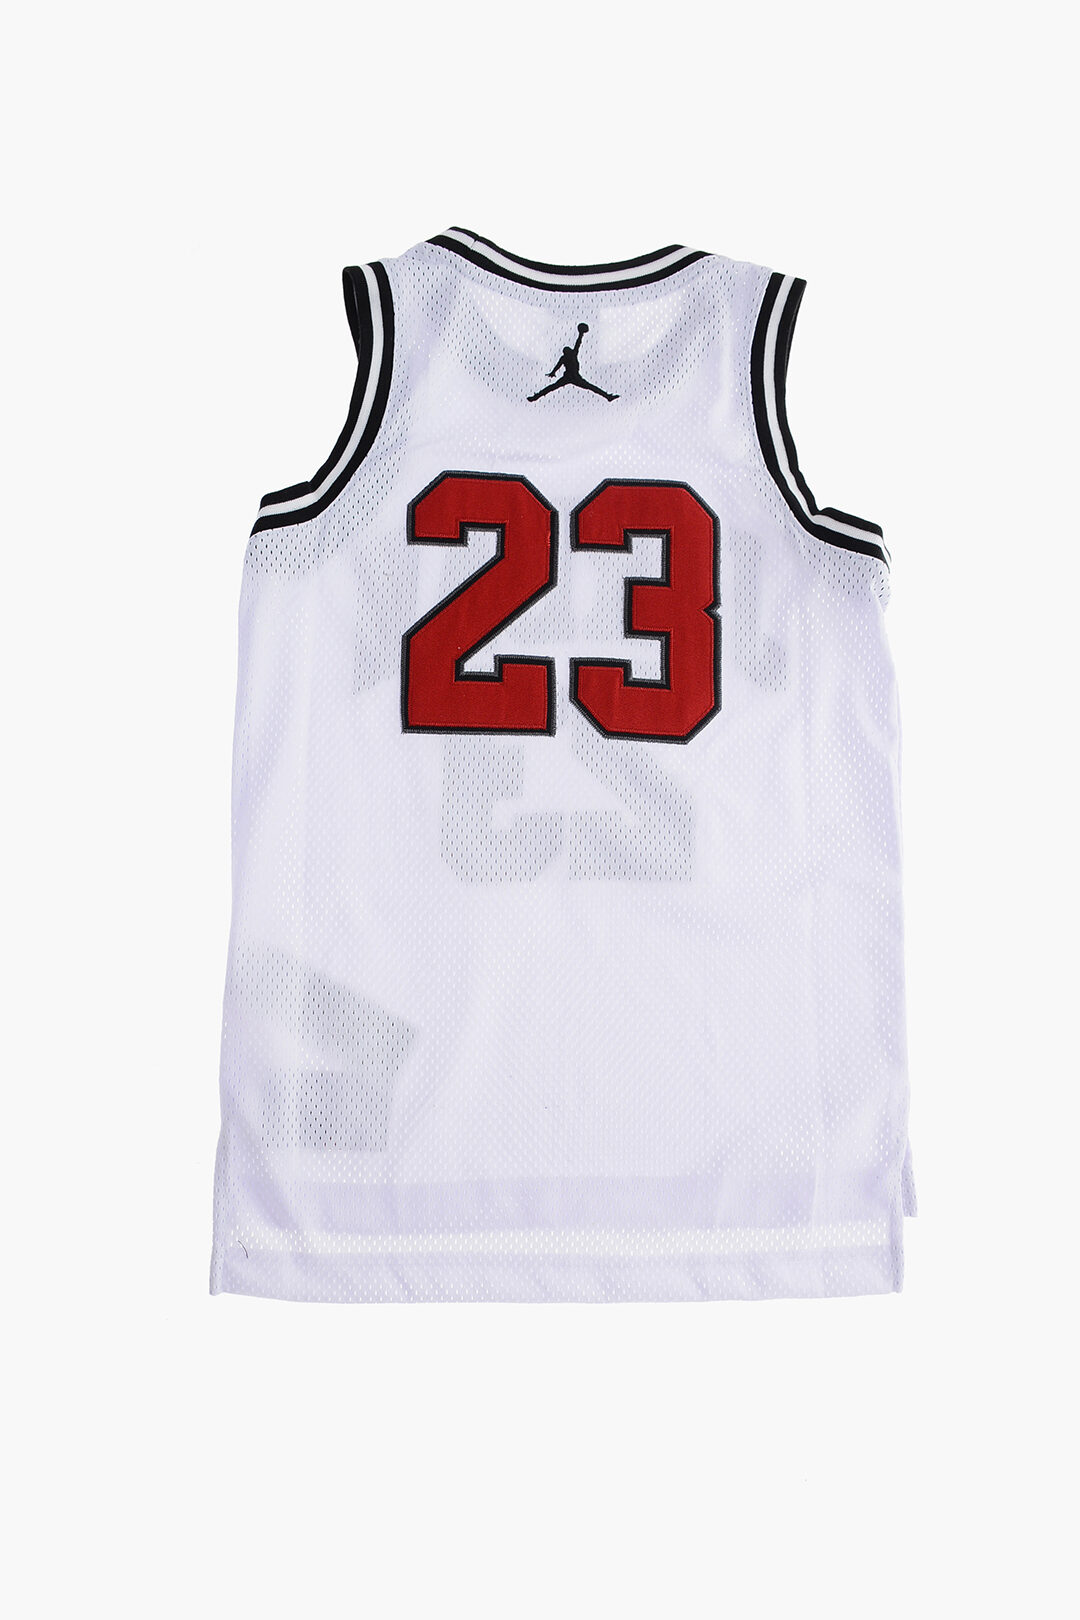 Nike Boys Air Jordan 23 White Jersey Sleeveless Tank Top Size Large 12/13  Yrs